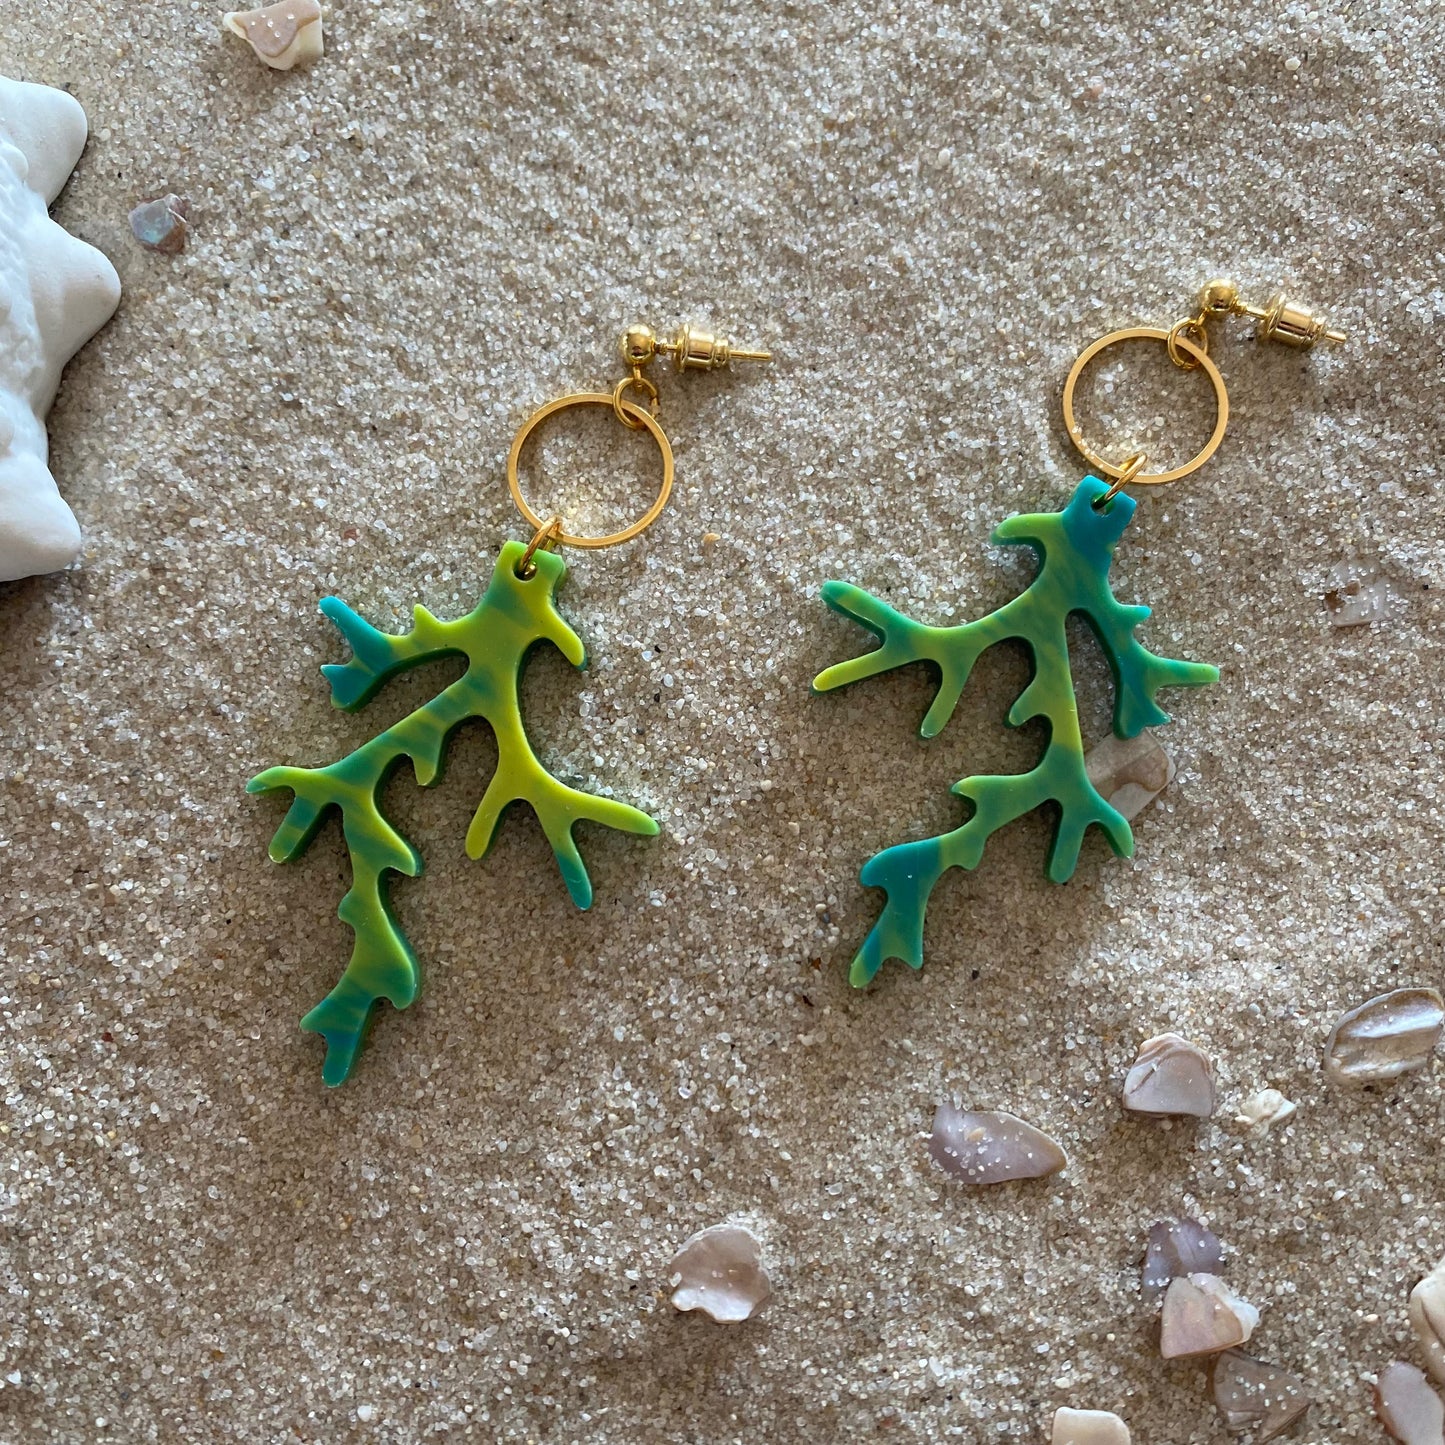 Coral Reef Earrings (Medium)- Tropical Green